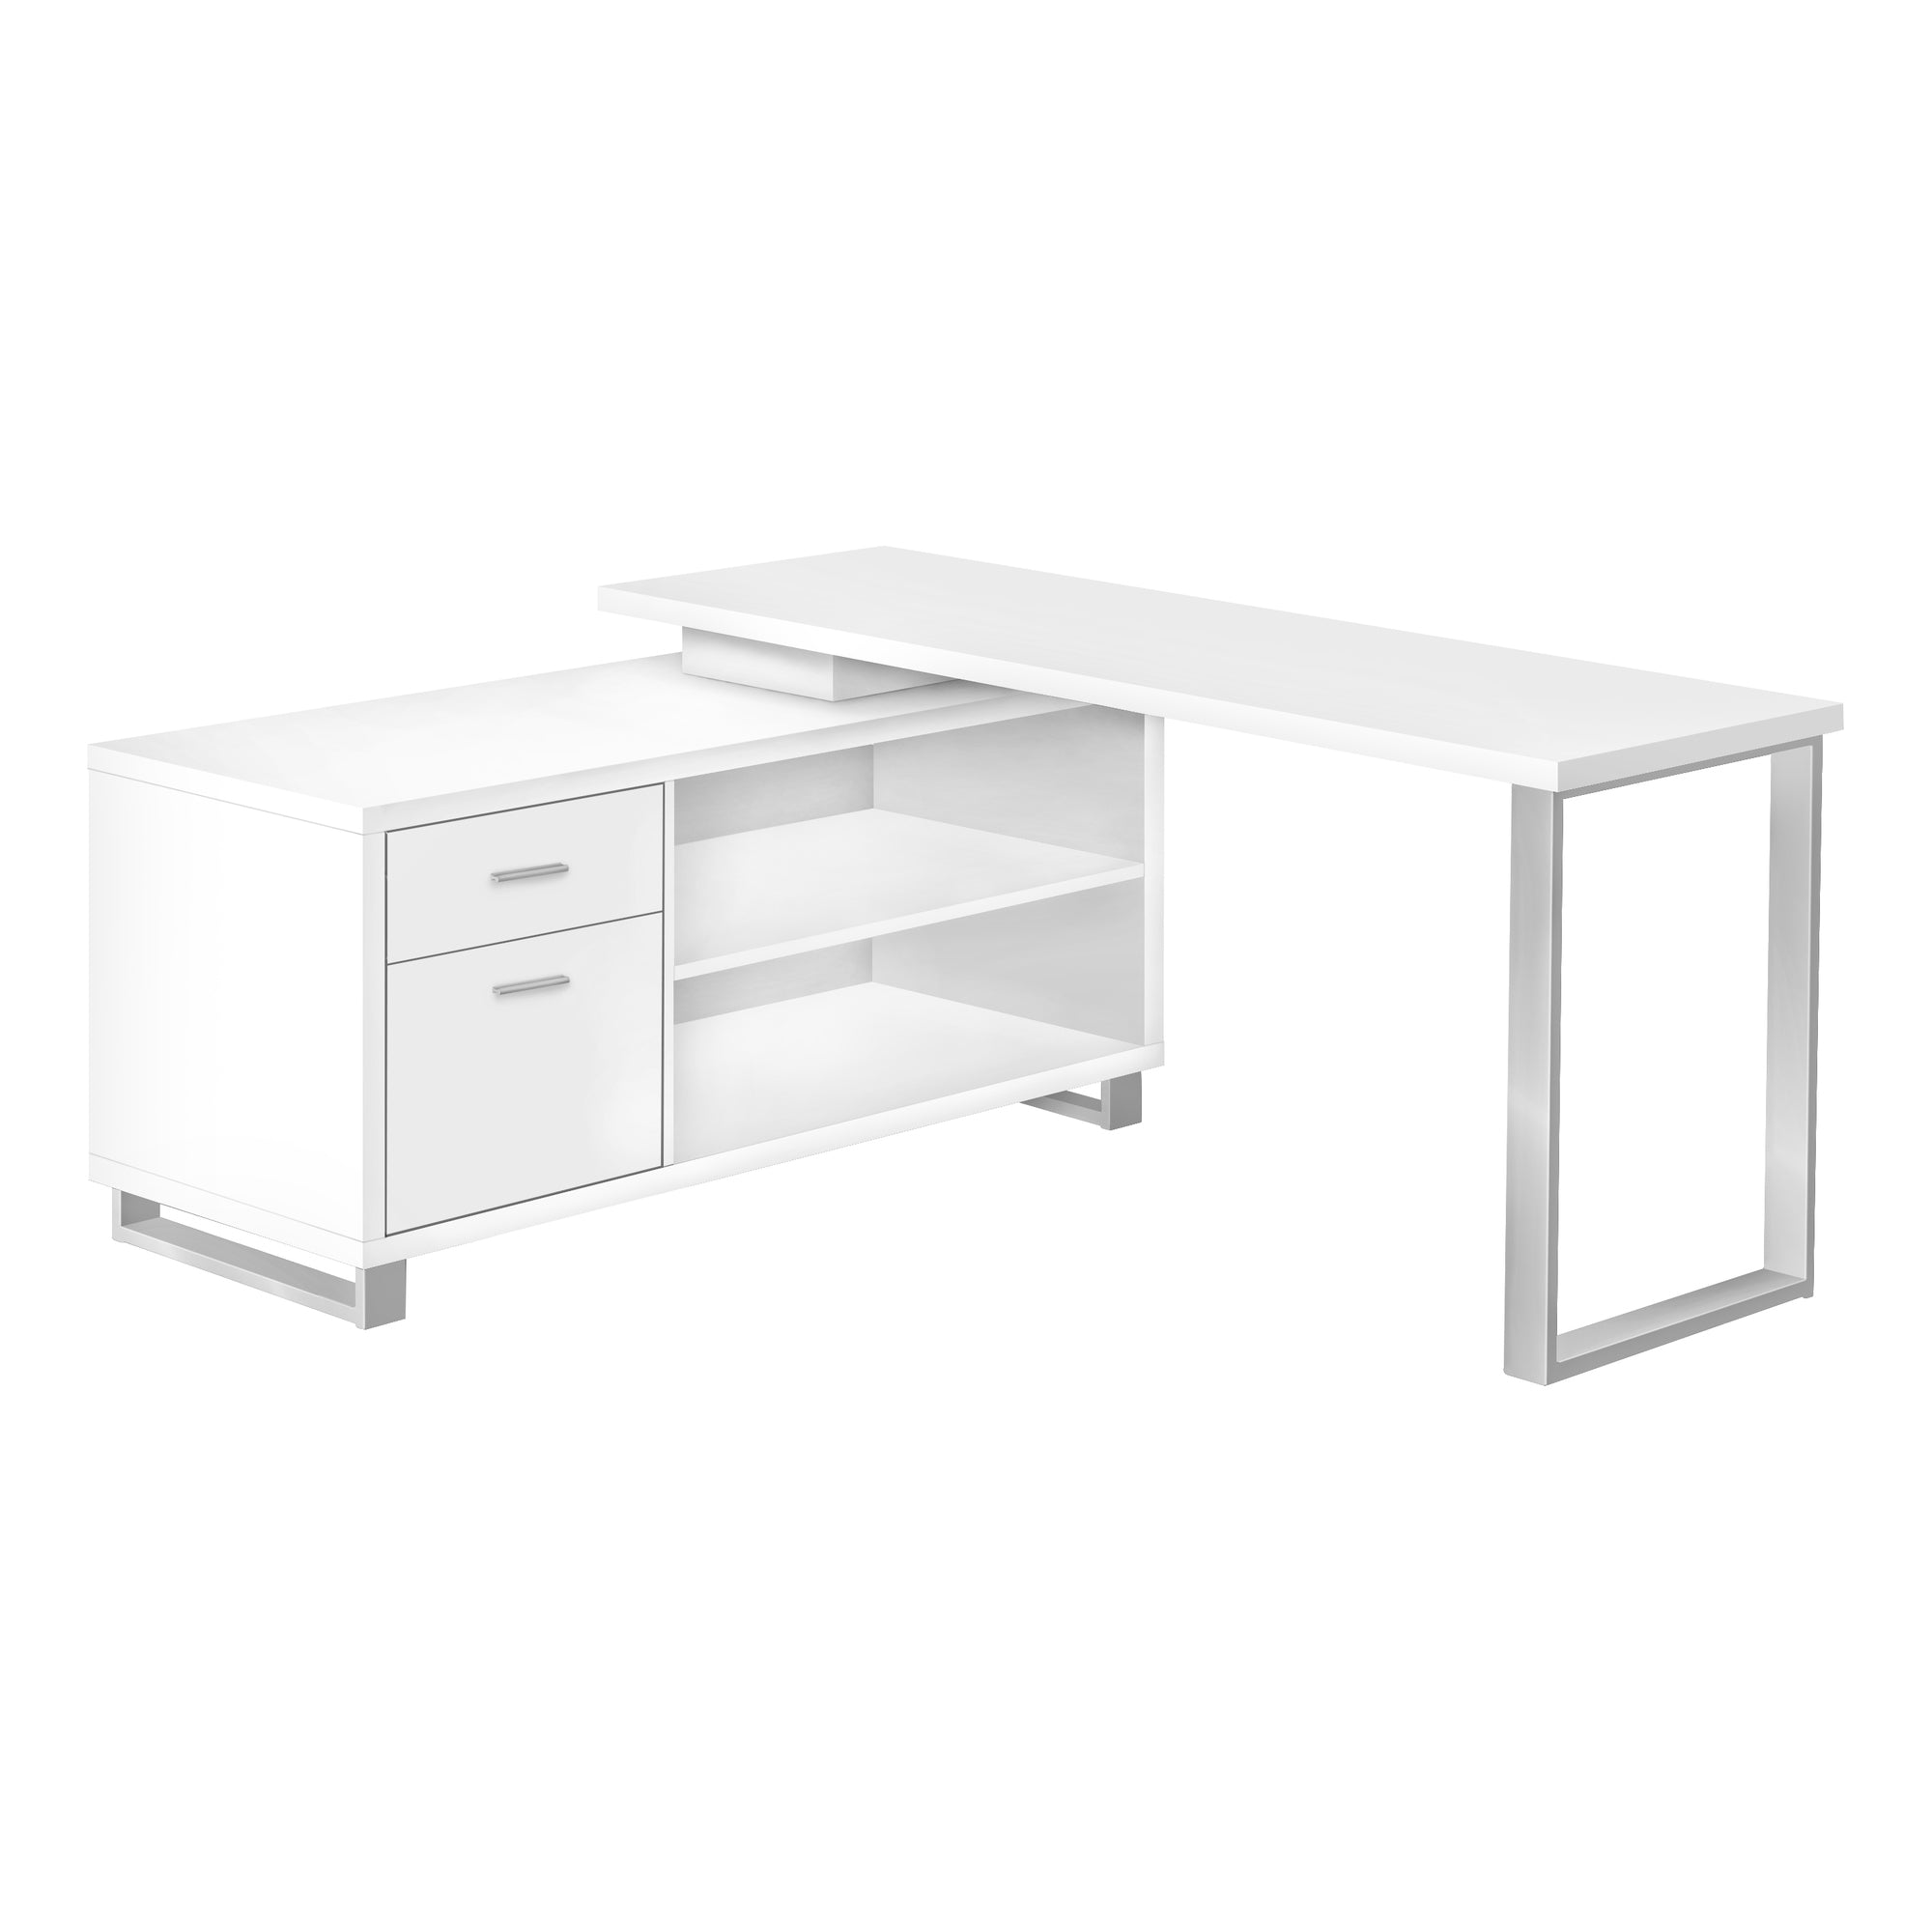 MN-937716    Computer Desk - L-Shaped / Corner / 2 Drawers / Metal Legs / Reversible - 72"L X 60"W - White / Silver